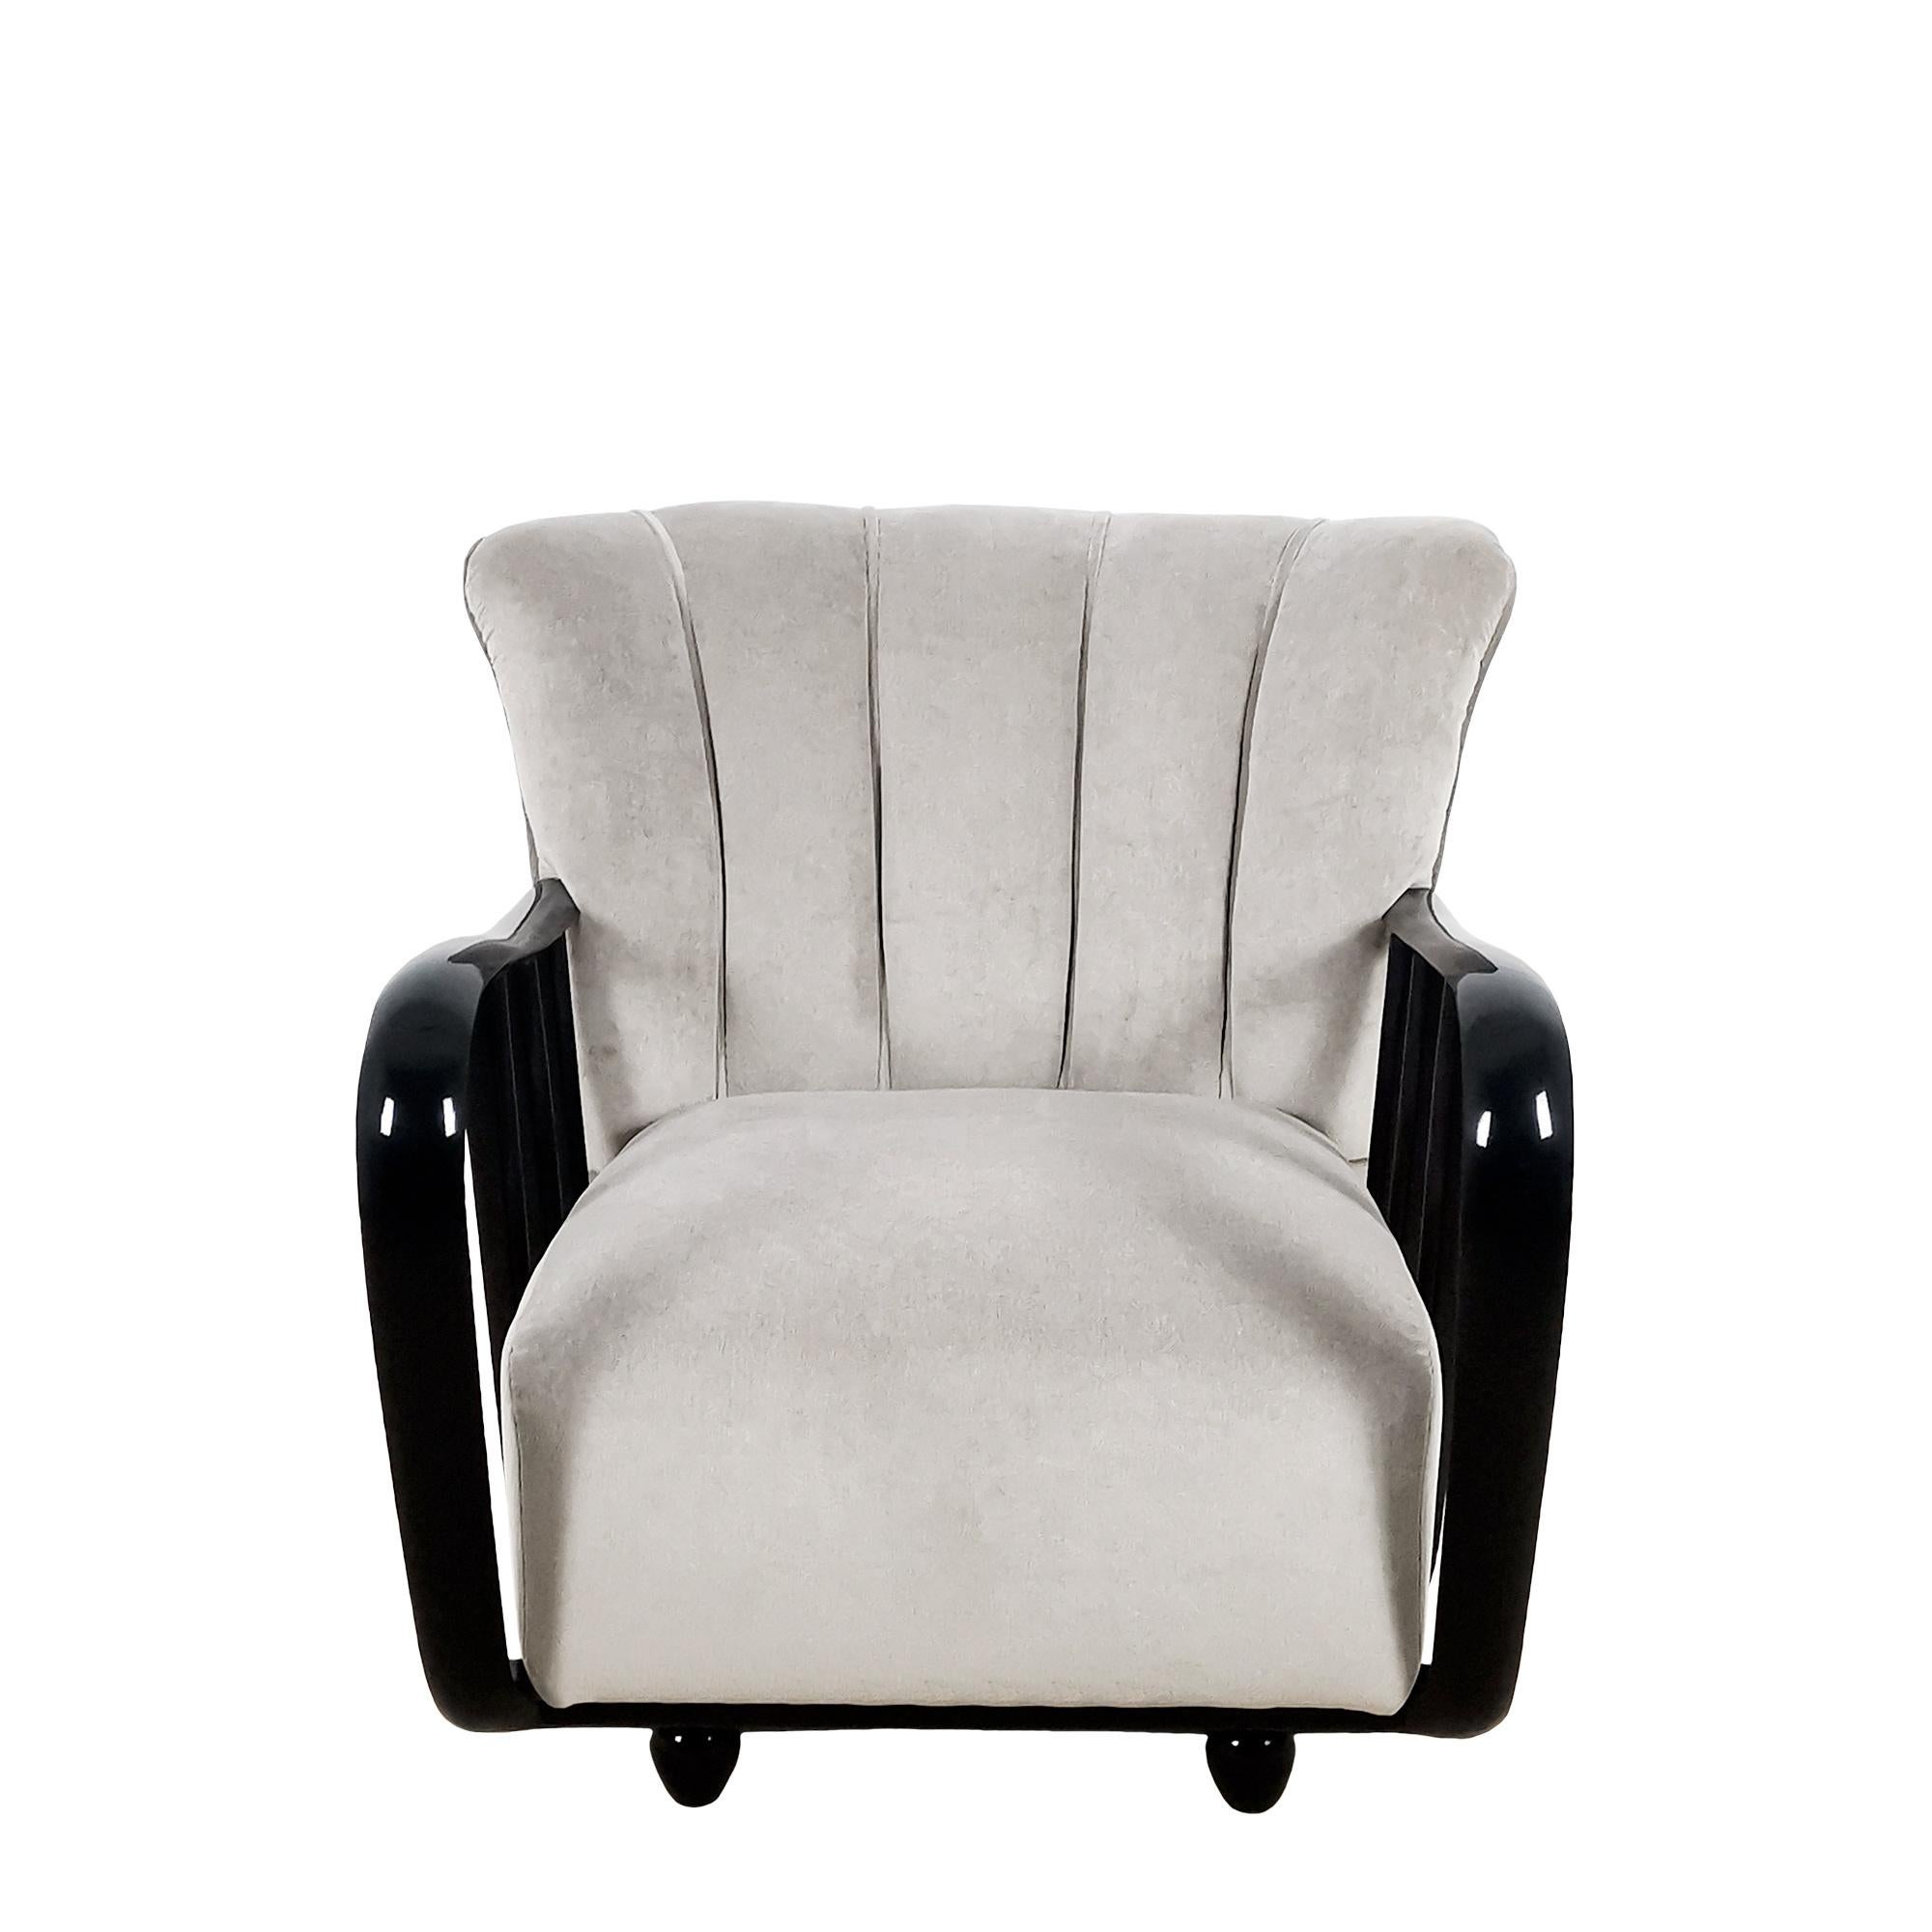 Großer Sessel mit Holzgestell, vollständig restauriert, neu gepolstert mit perlgrauem Baumwollsamtstoff. Armlehnen und Füße aus gebeiztem und lackiertem massivem Kirschbaumholz.

Design: Paolo Buffa.

Italien um 1935.